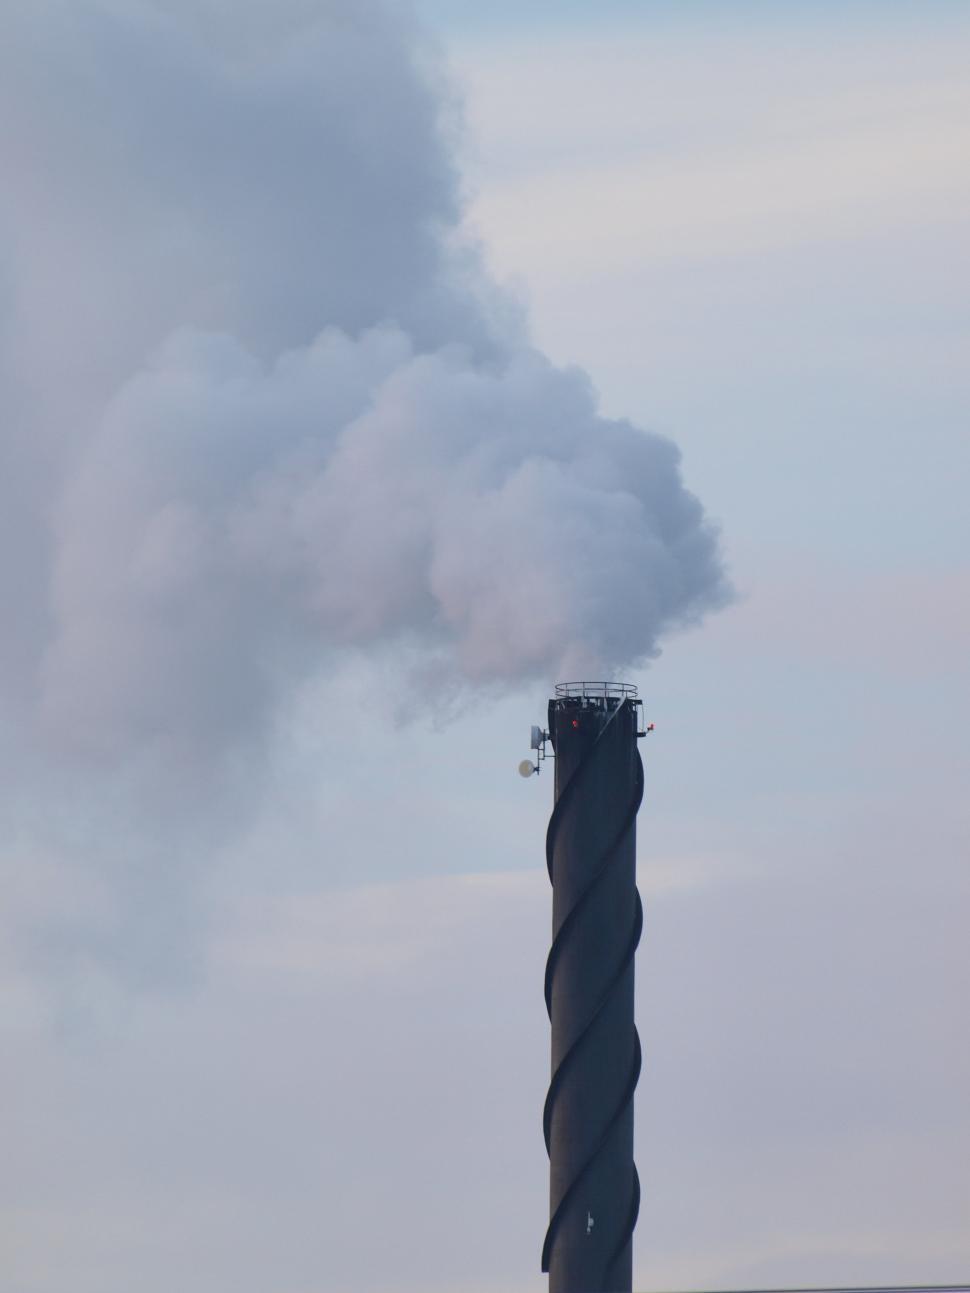 Free Image of Big Chimney Spews Smoke 